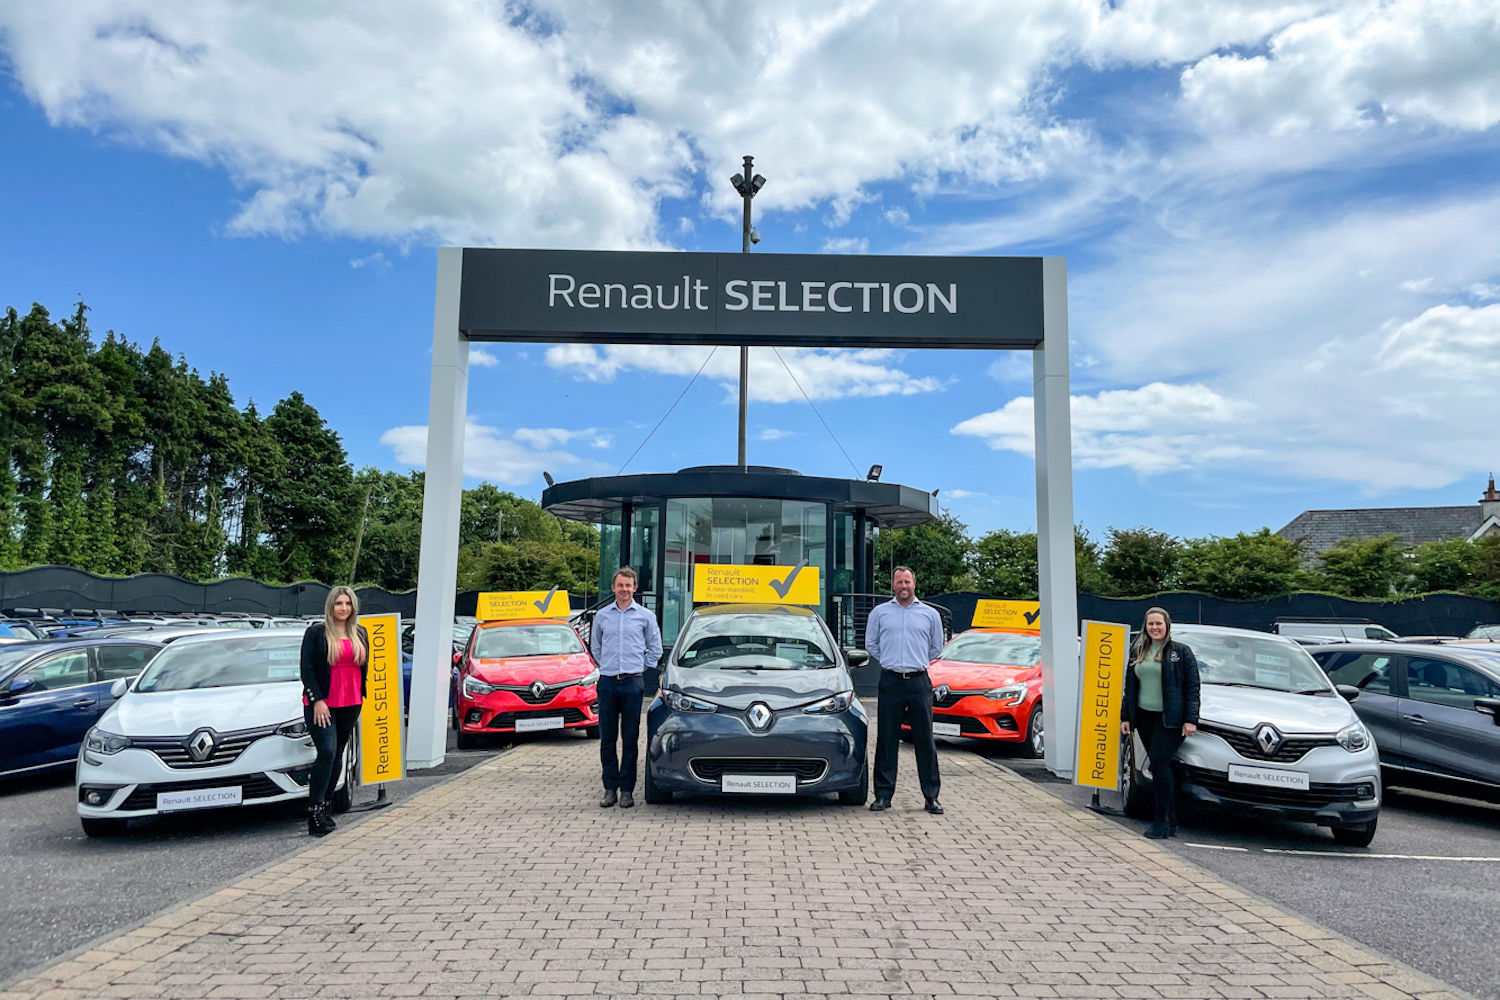 Car Industry News | Kearys of Midleton open Renault used car showroom | CompleteCar.ie